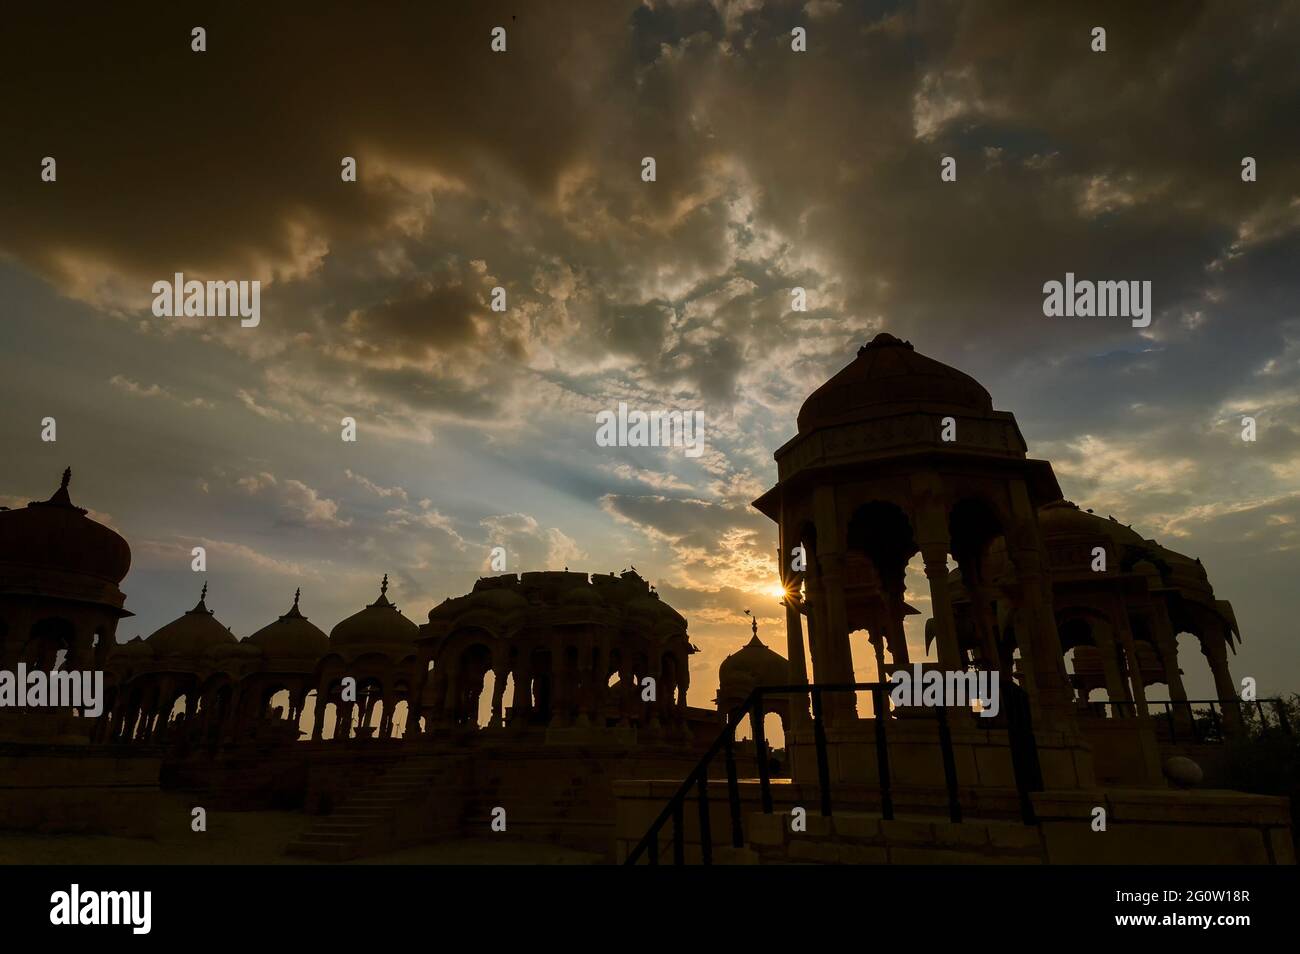 Silueta de Bada Bagh o Barabagh, significa Jardín Grande, es un complejo de jardines en Jaisalmer, Rajasthan, India, para los cenotafos reales de Maharajas significa Rey Foto de stock